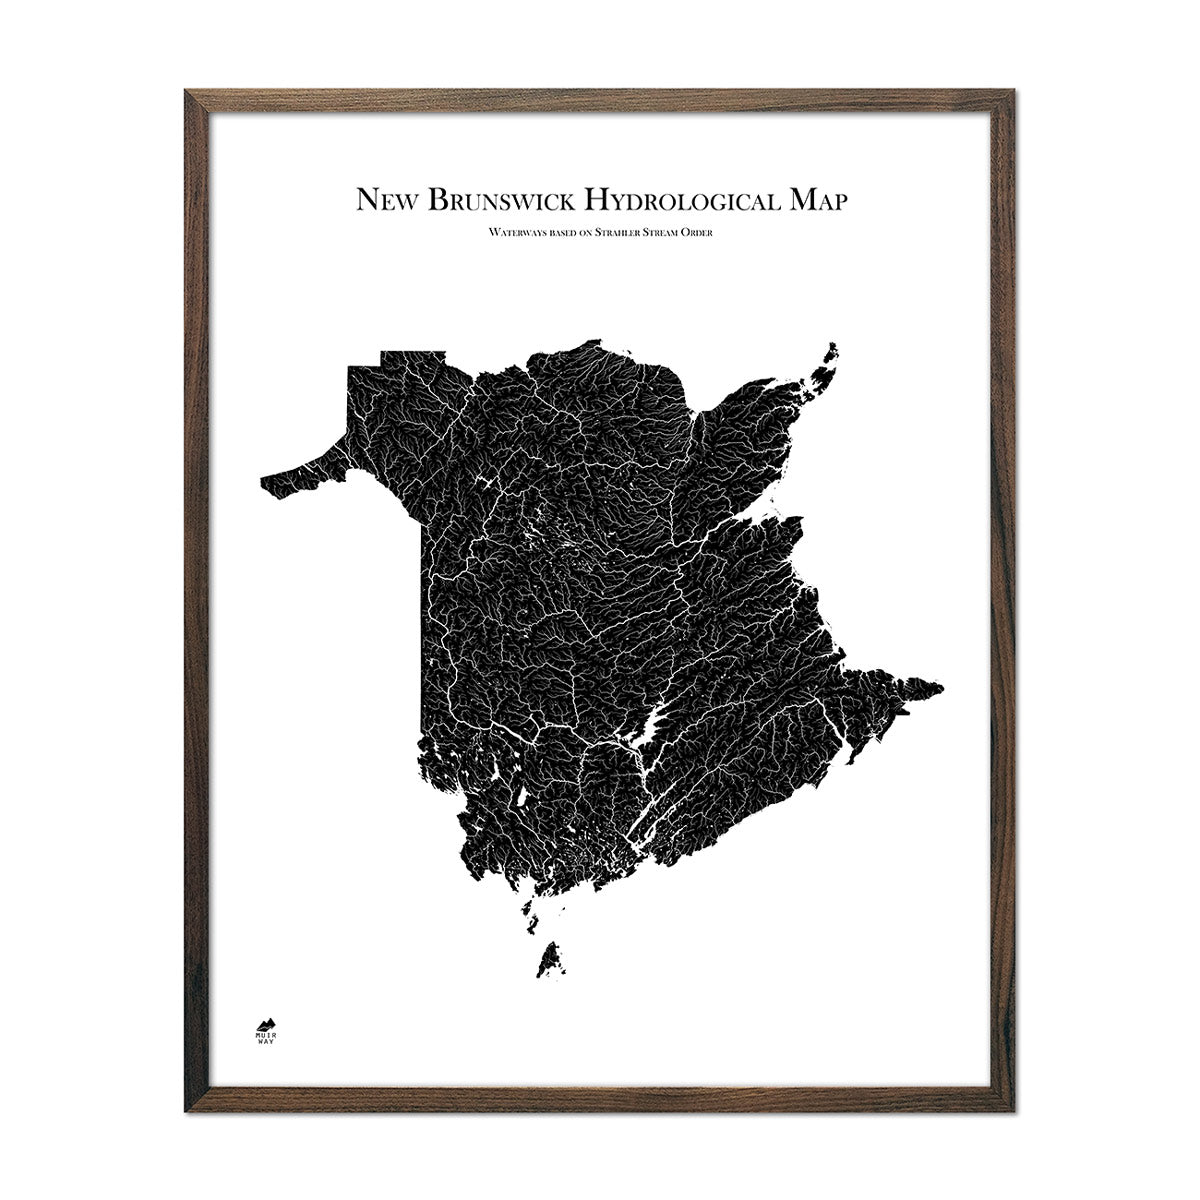 New Brunswick Hydrological Map